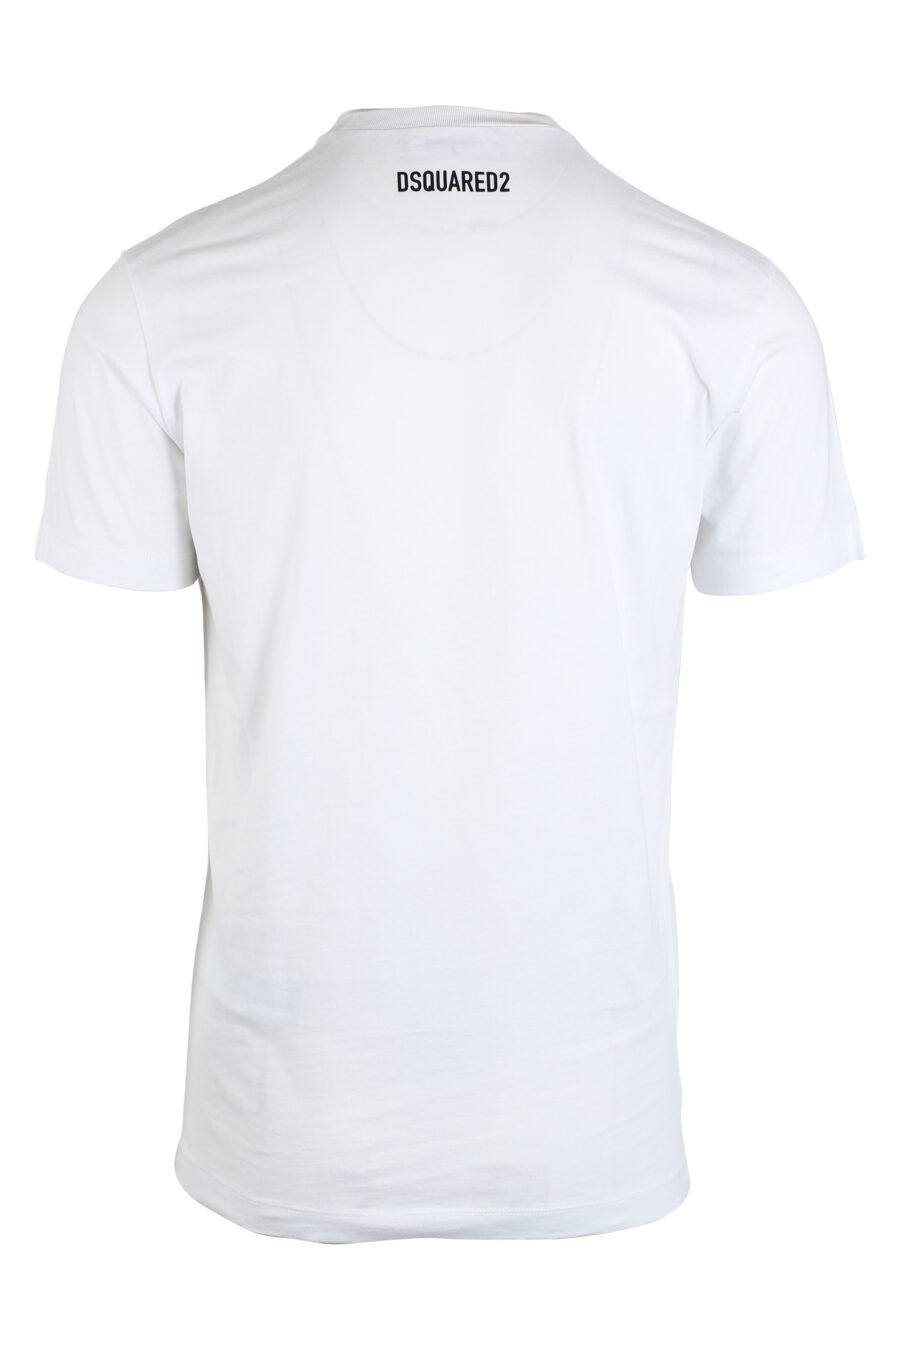 Weißes T-Shirt mit "d2"-Maxilogo im roten Quadrat - IMG 0675